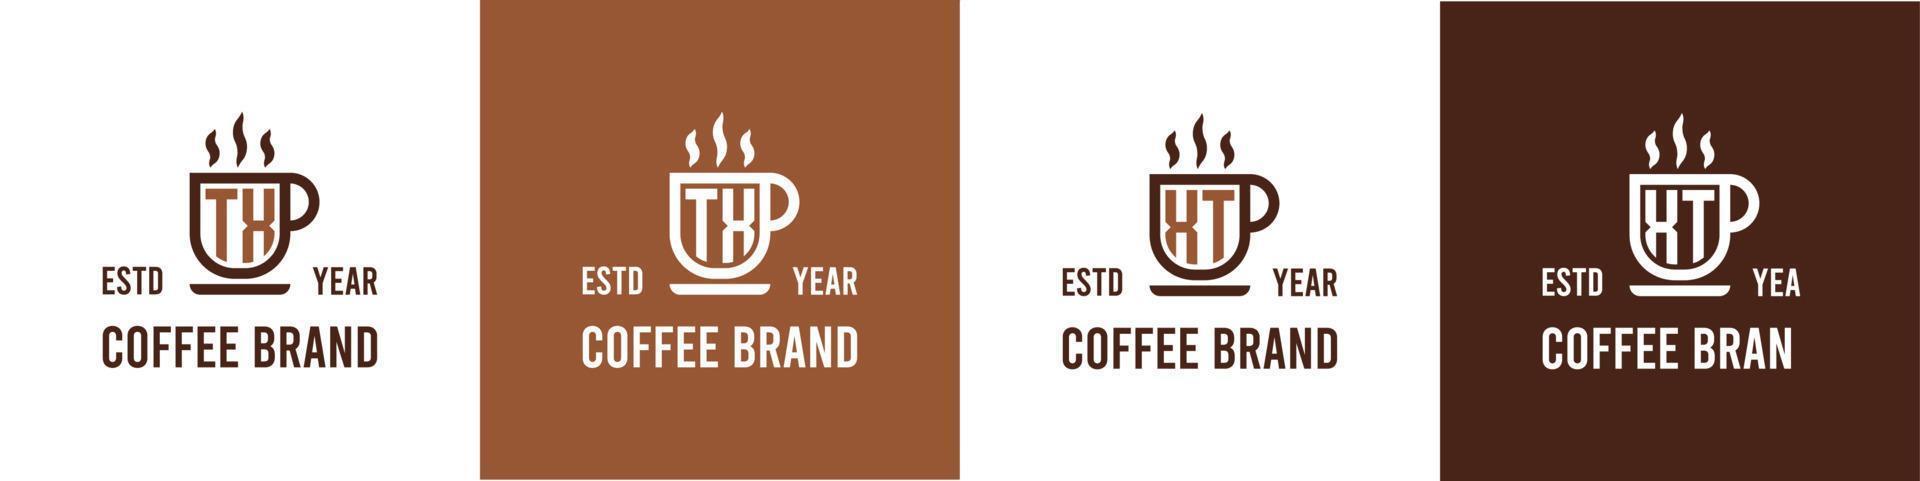 letra tx y xt café logo, adecuado para ninguna negocio relacionado a café, té, o otro con tx o xt iniciales. vector